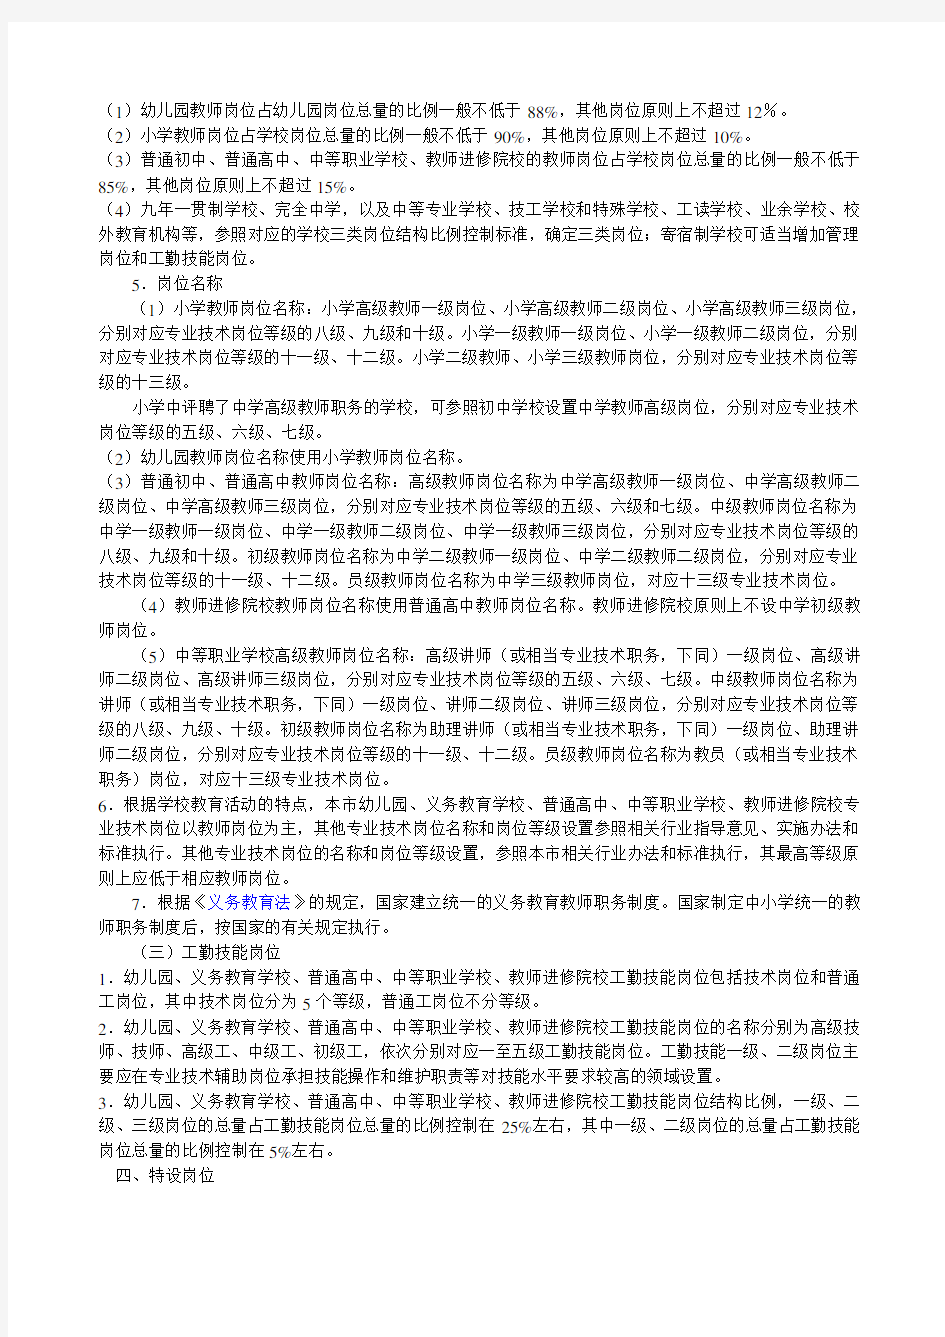 上海市幼儿园、义务教育学校、普通高中、中等职业学校、教师进修院校岗位设置管理的实施办法